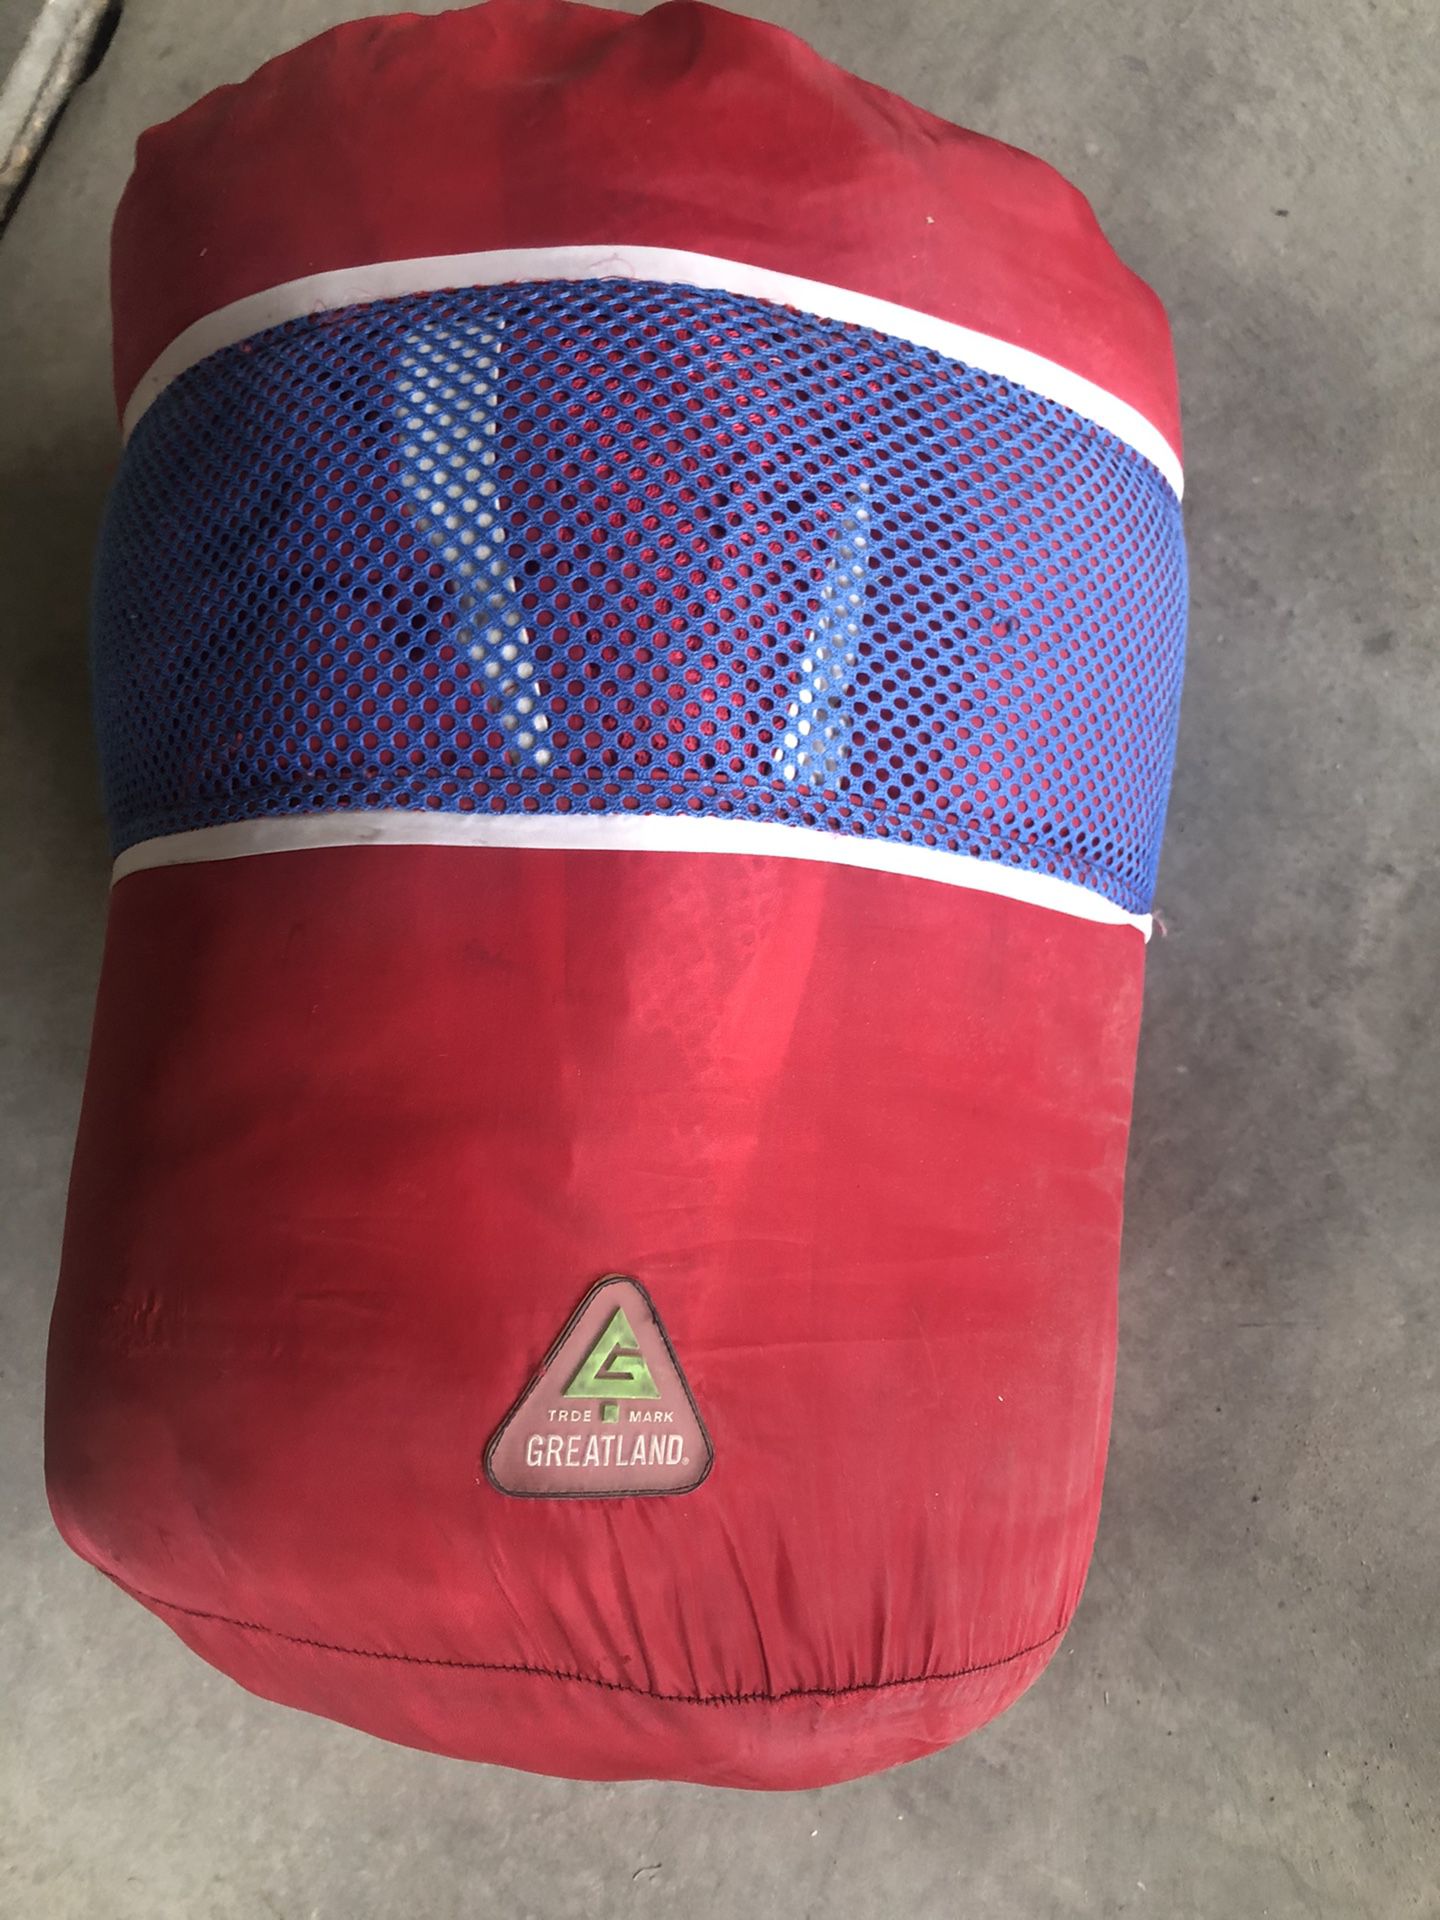 Red Greatland sleeping bag